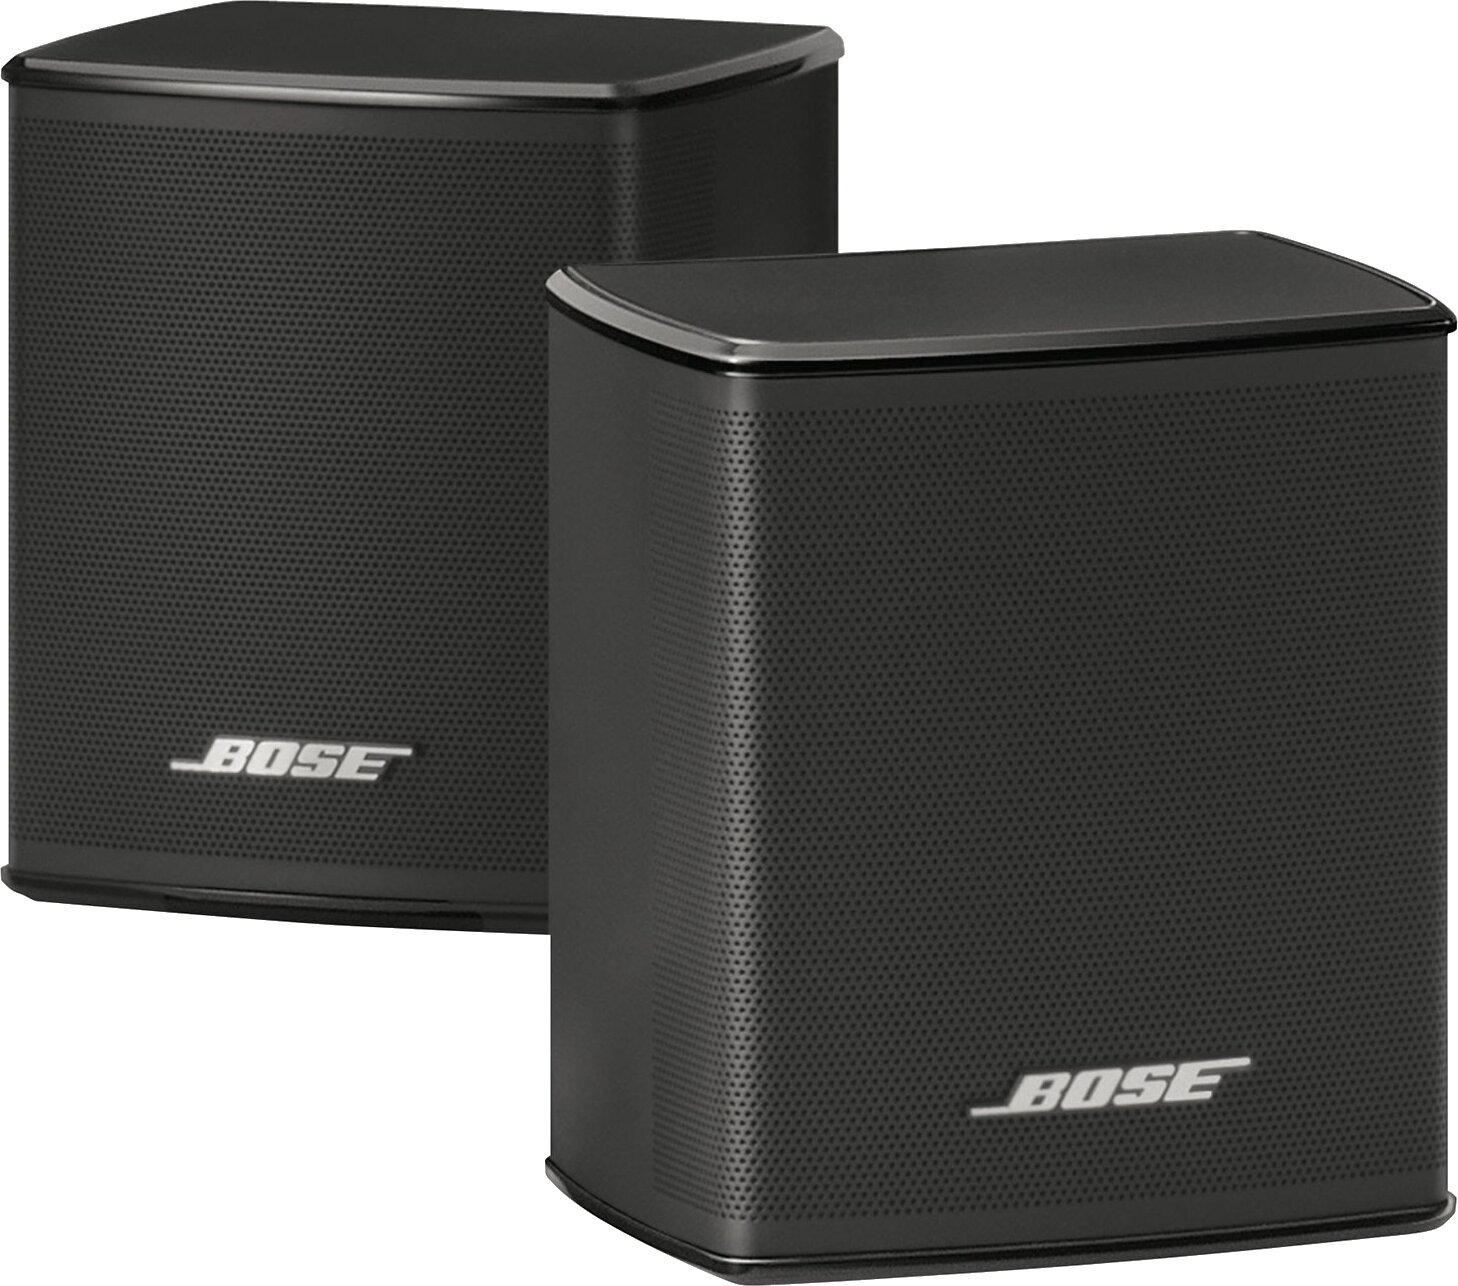 HiFi-Wandlautsprecher Bose Surround Speakers Black